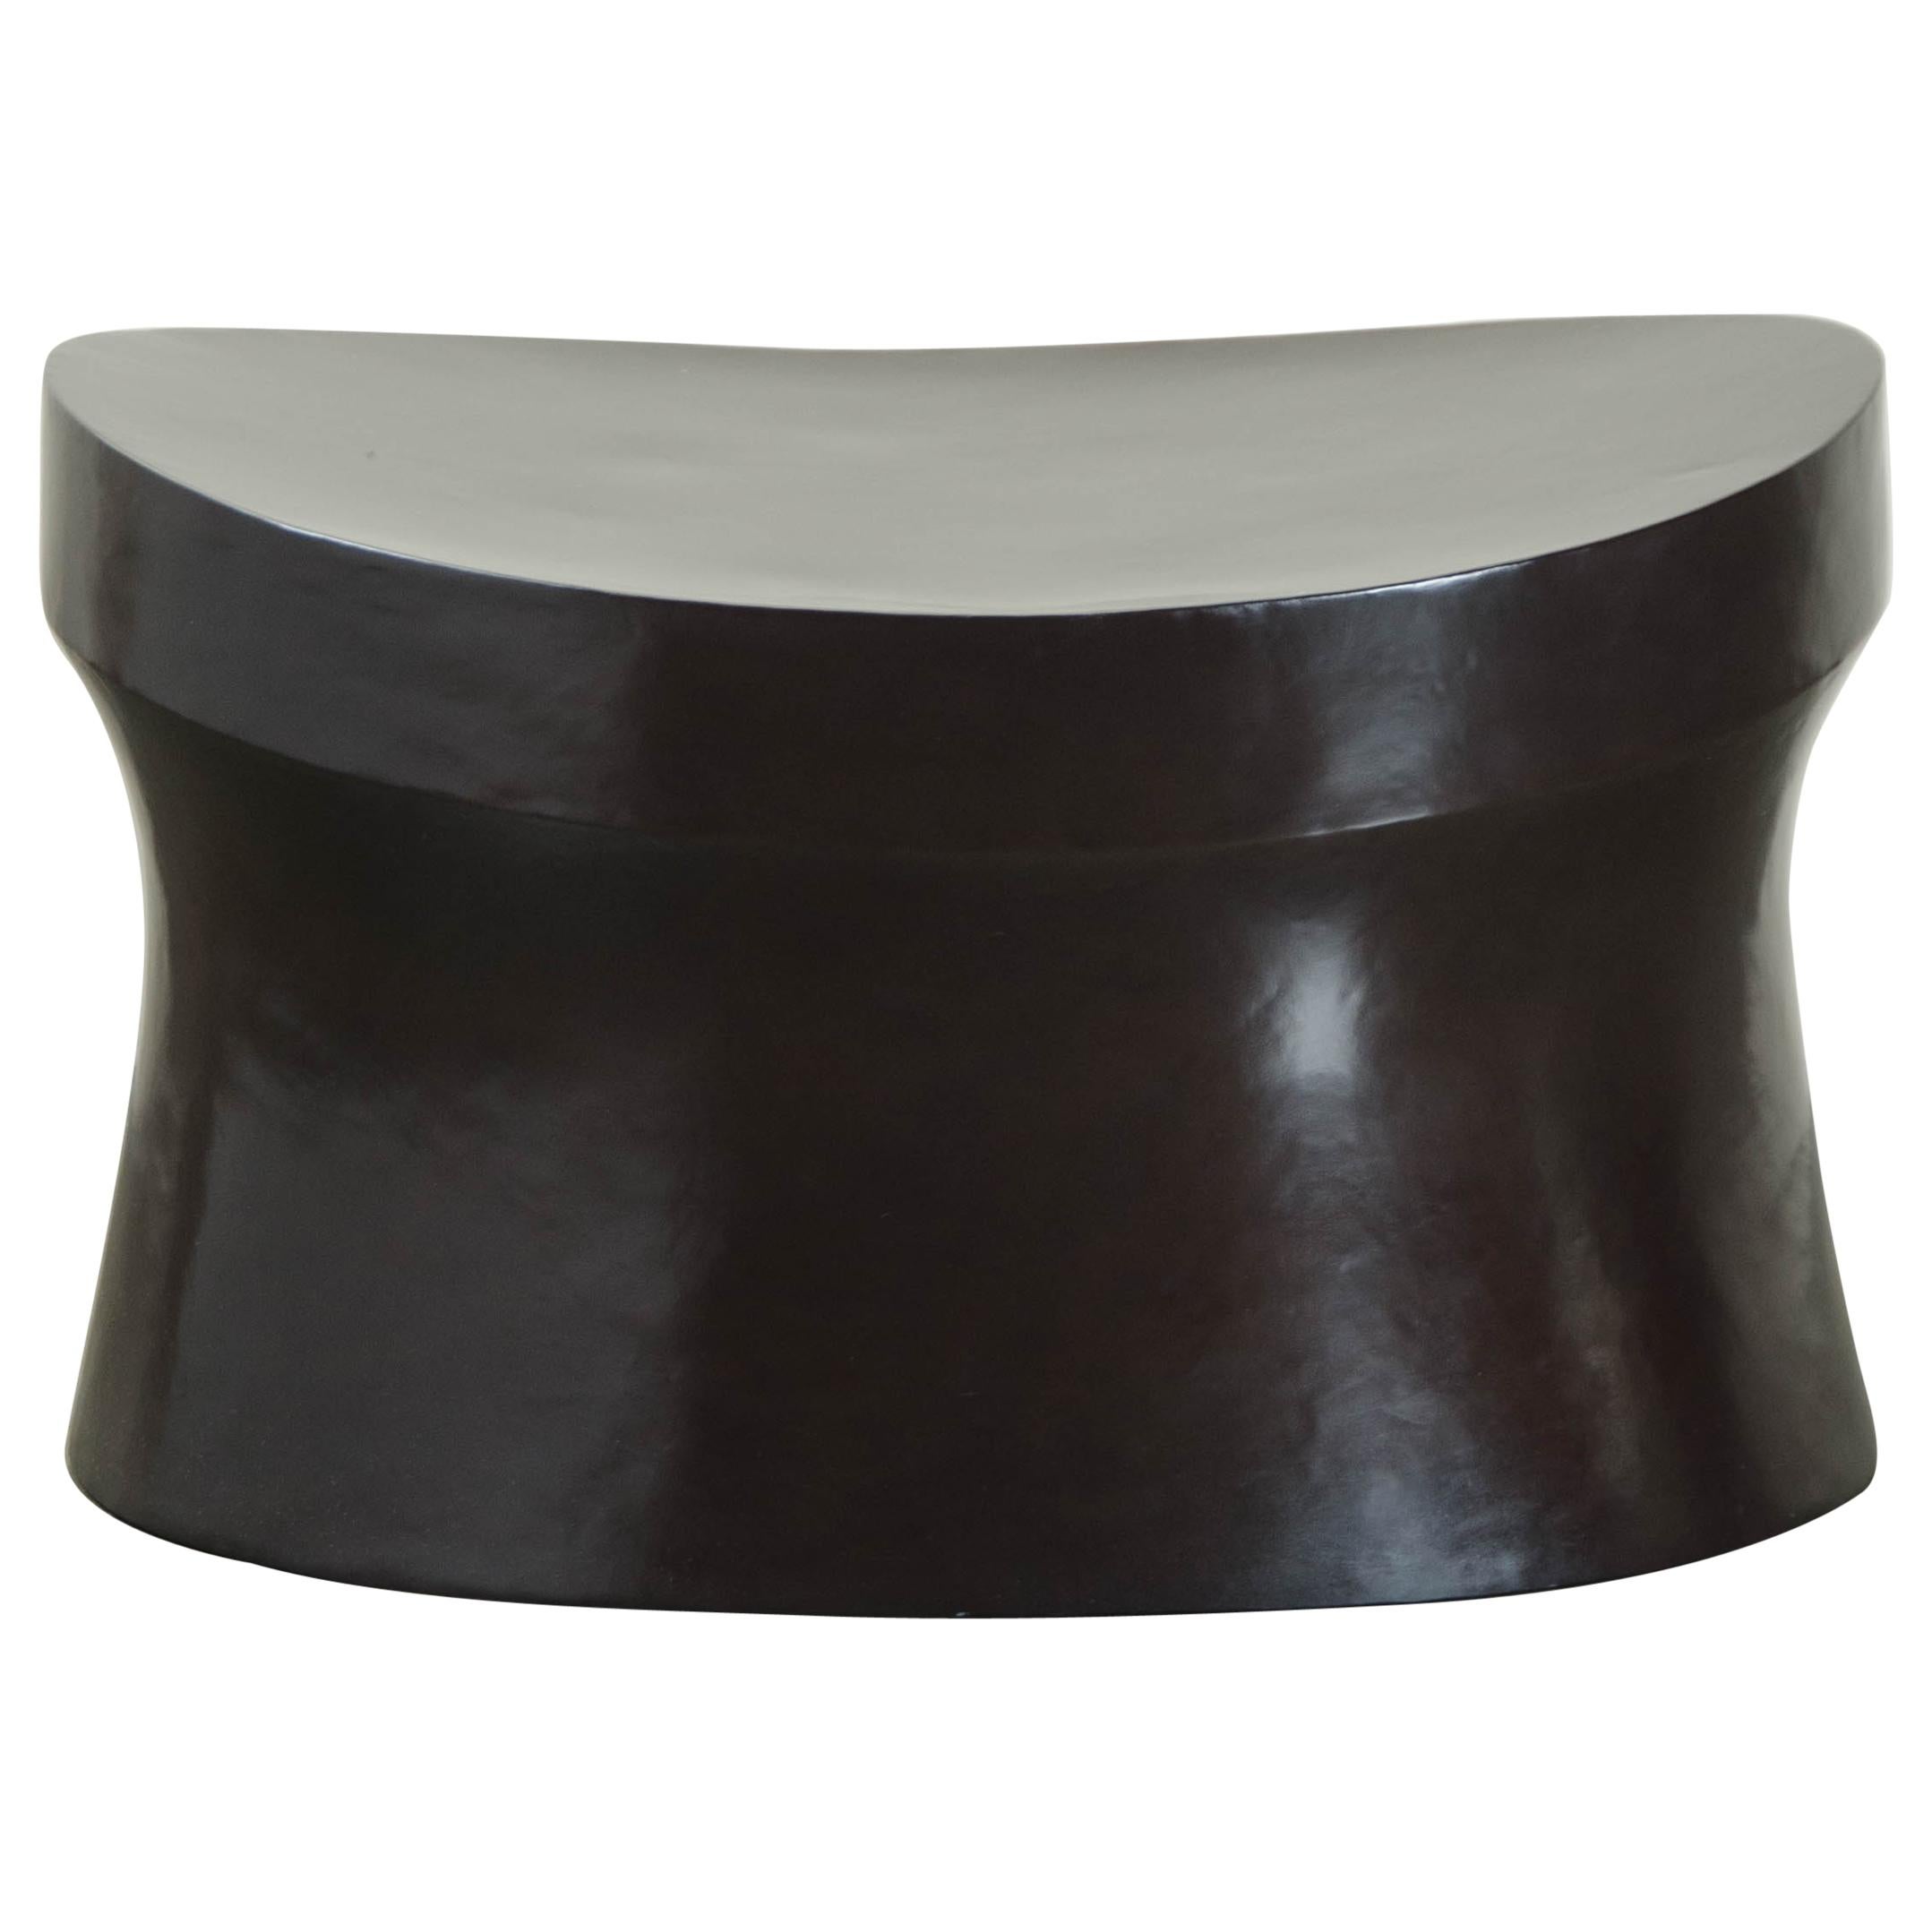 Tabouret à tambour avec assise de selle, cuivre noir de Robert Kuo, édition limitée